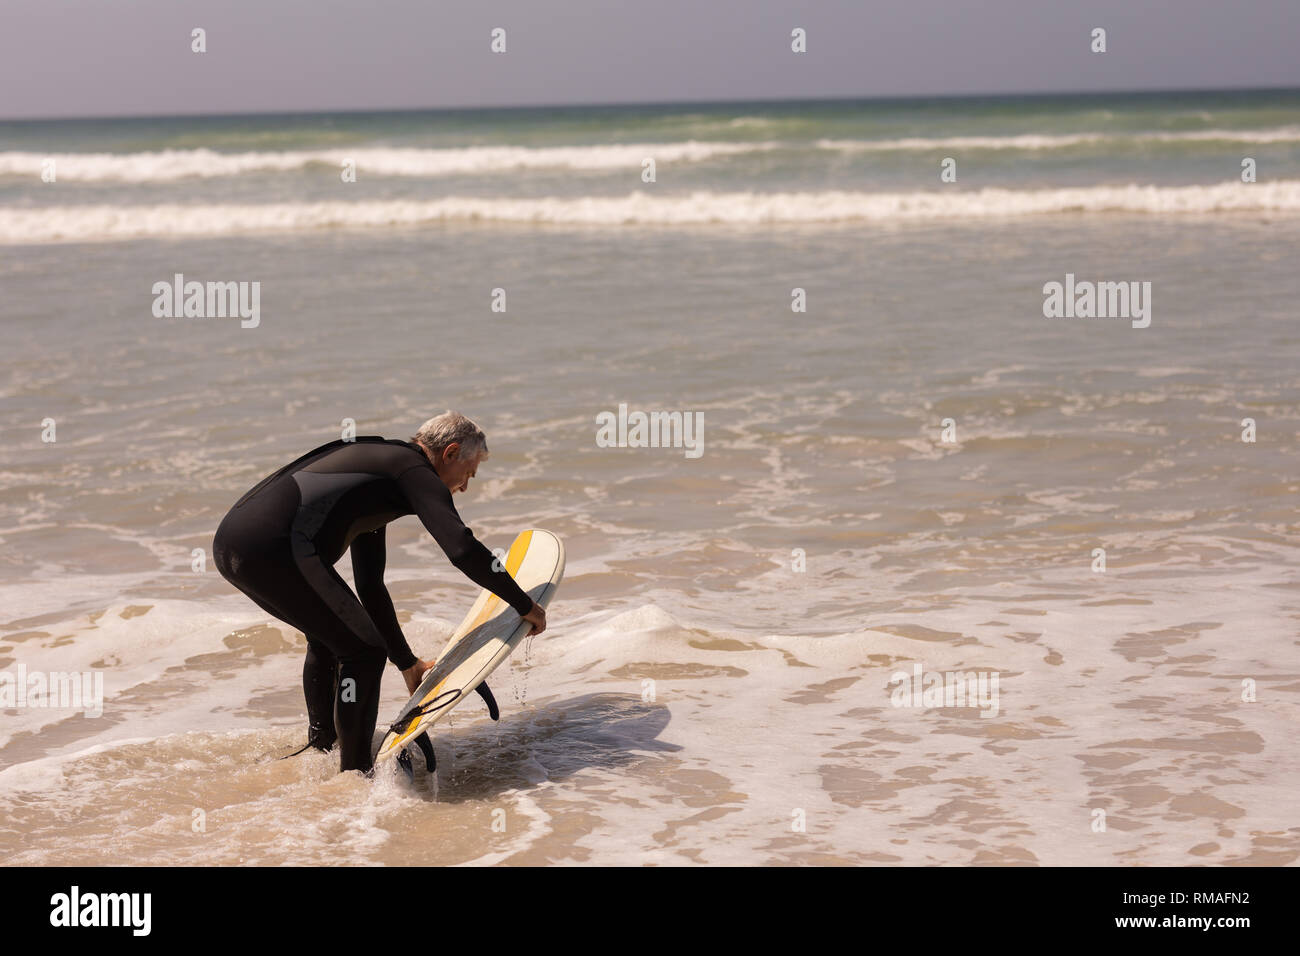 Ältere männliche Surfer mit Surfbrett surfen im Meer Stockfoto